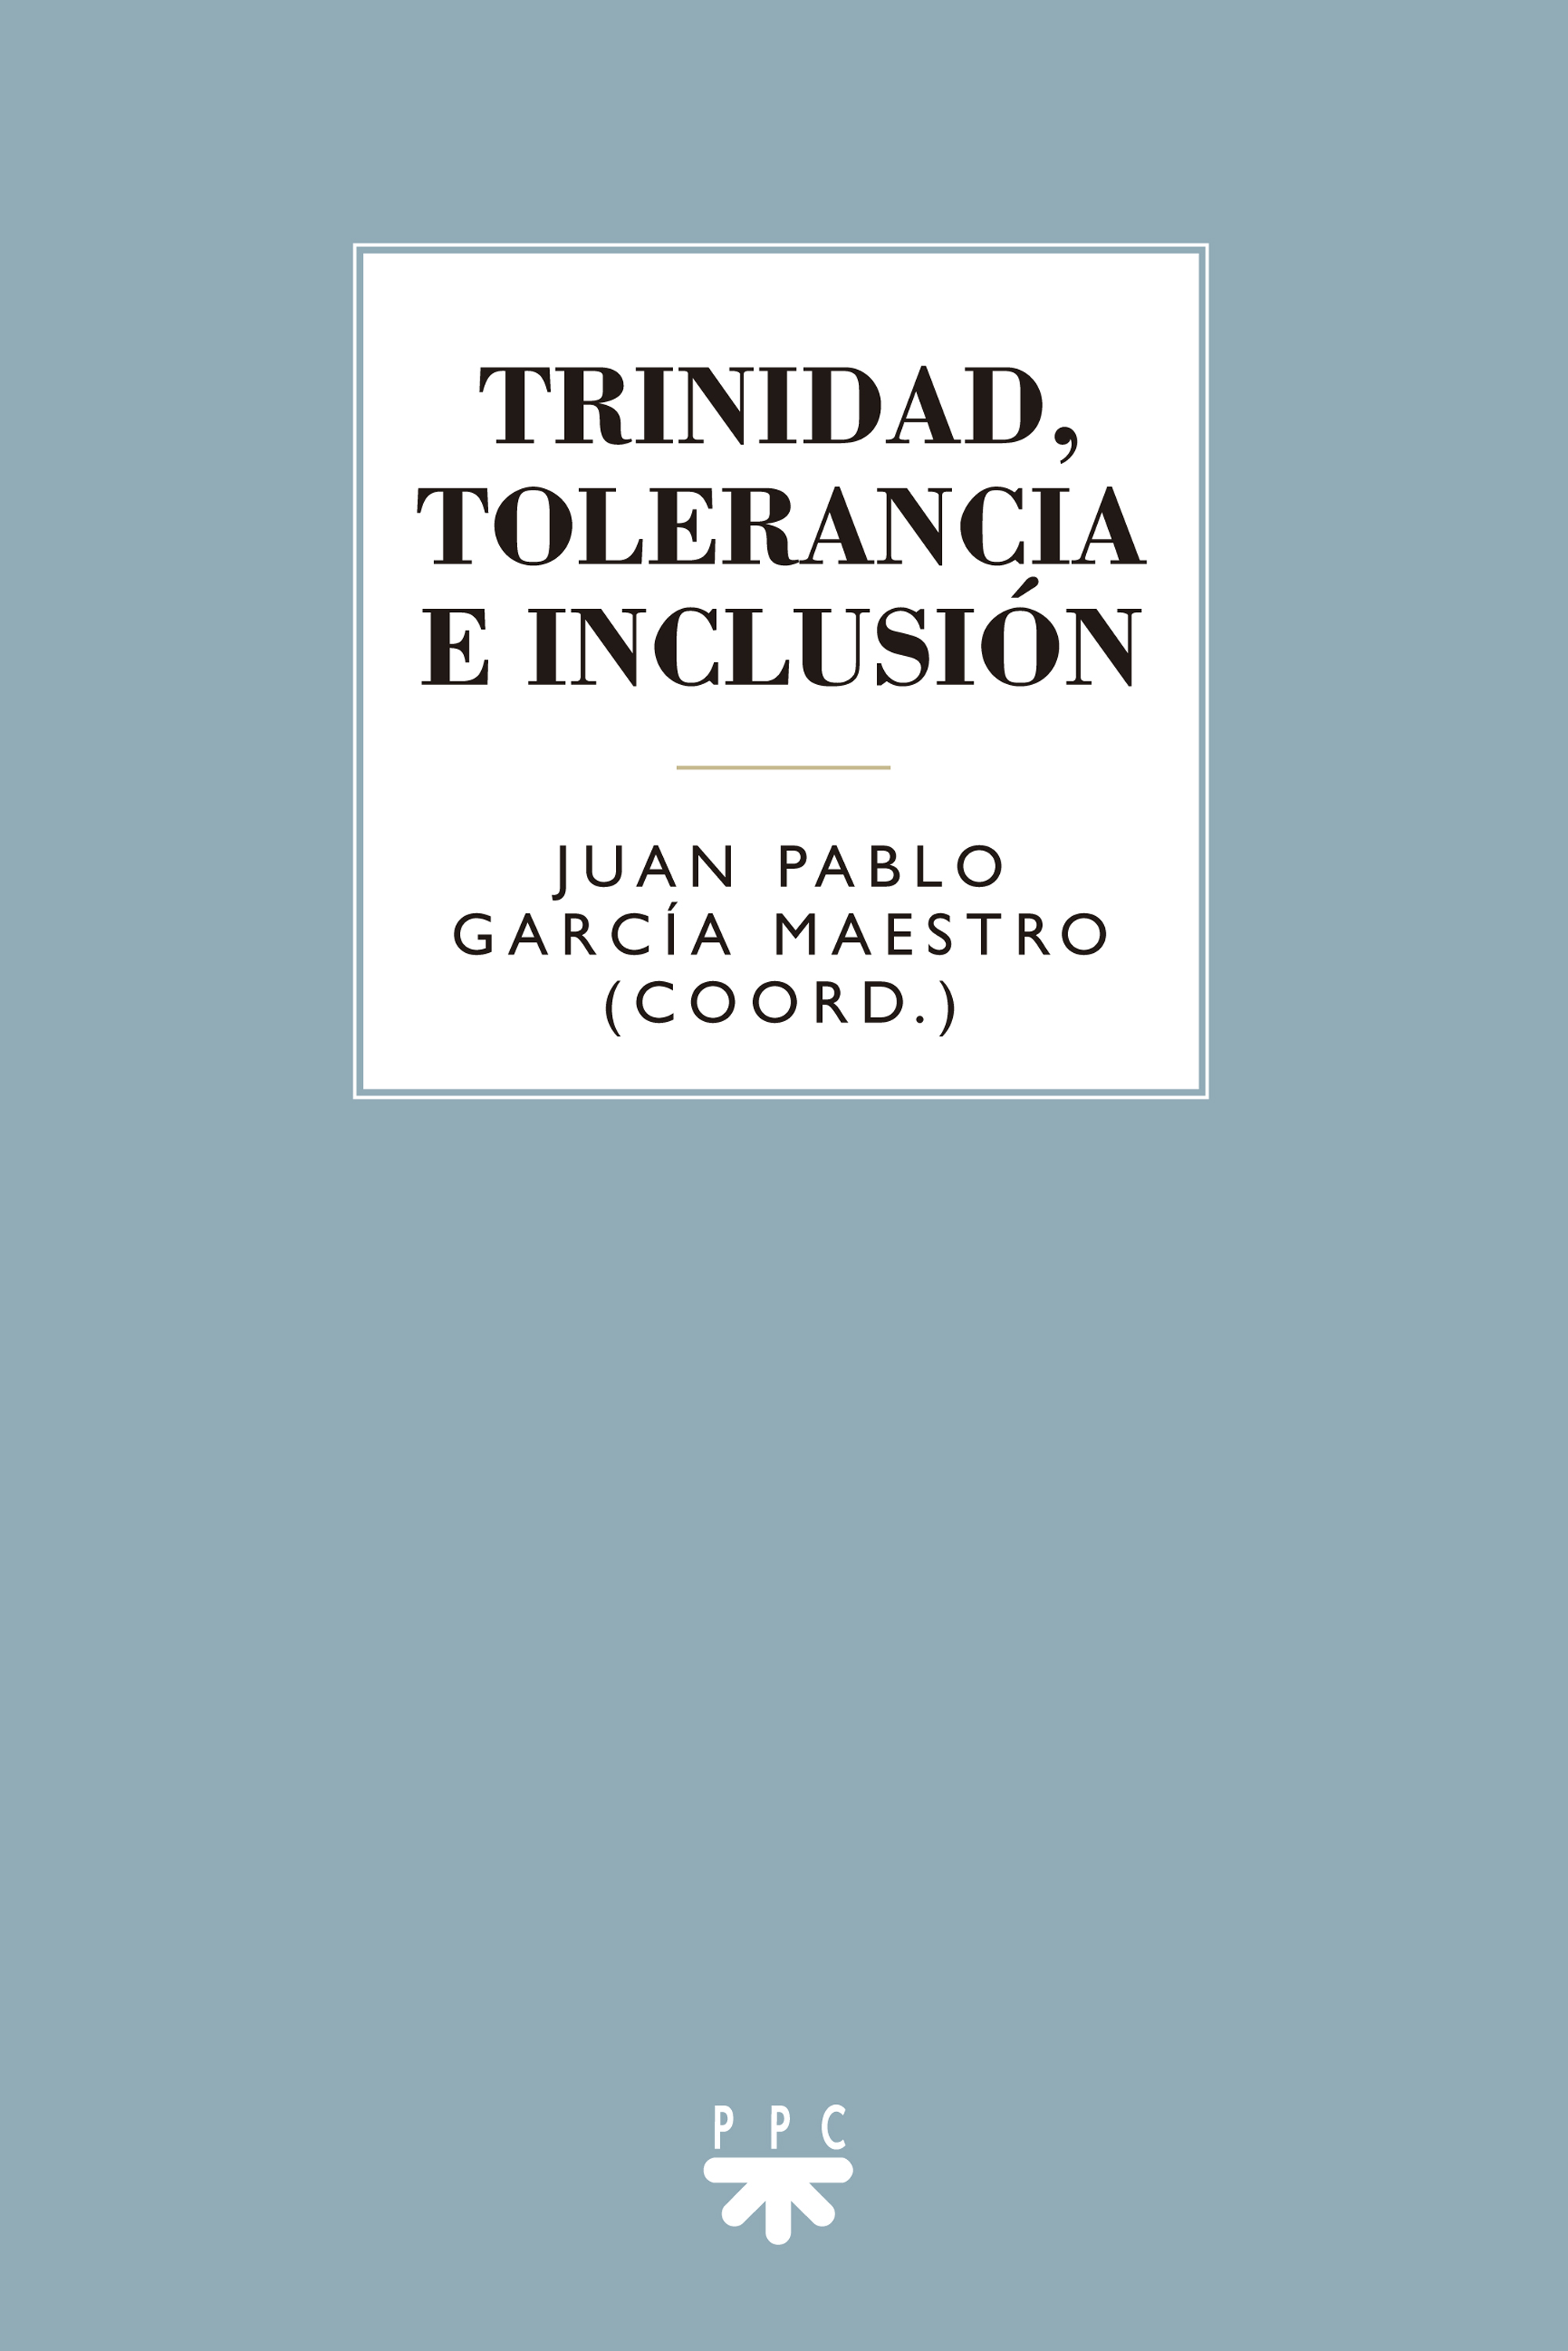 Imagen de portada del libro Trinidad, tolerancia e inclusión